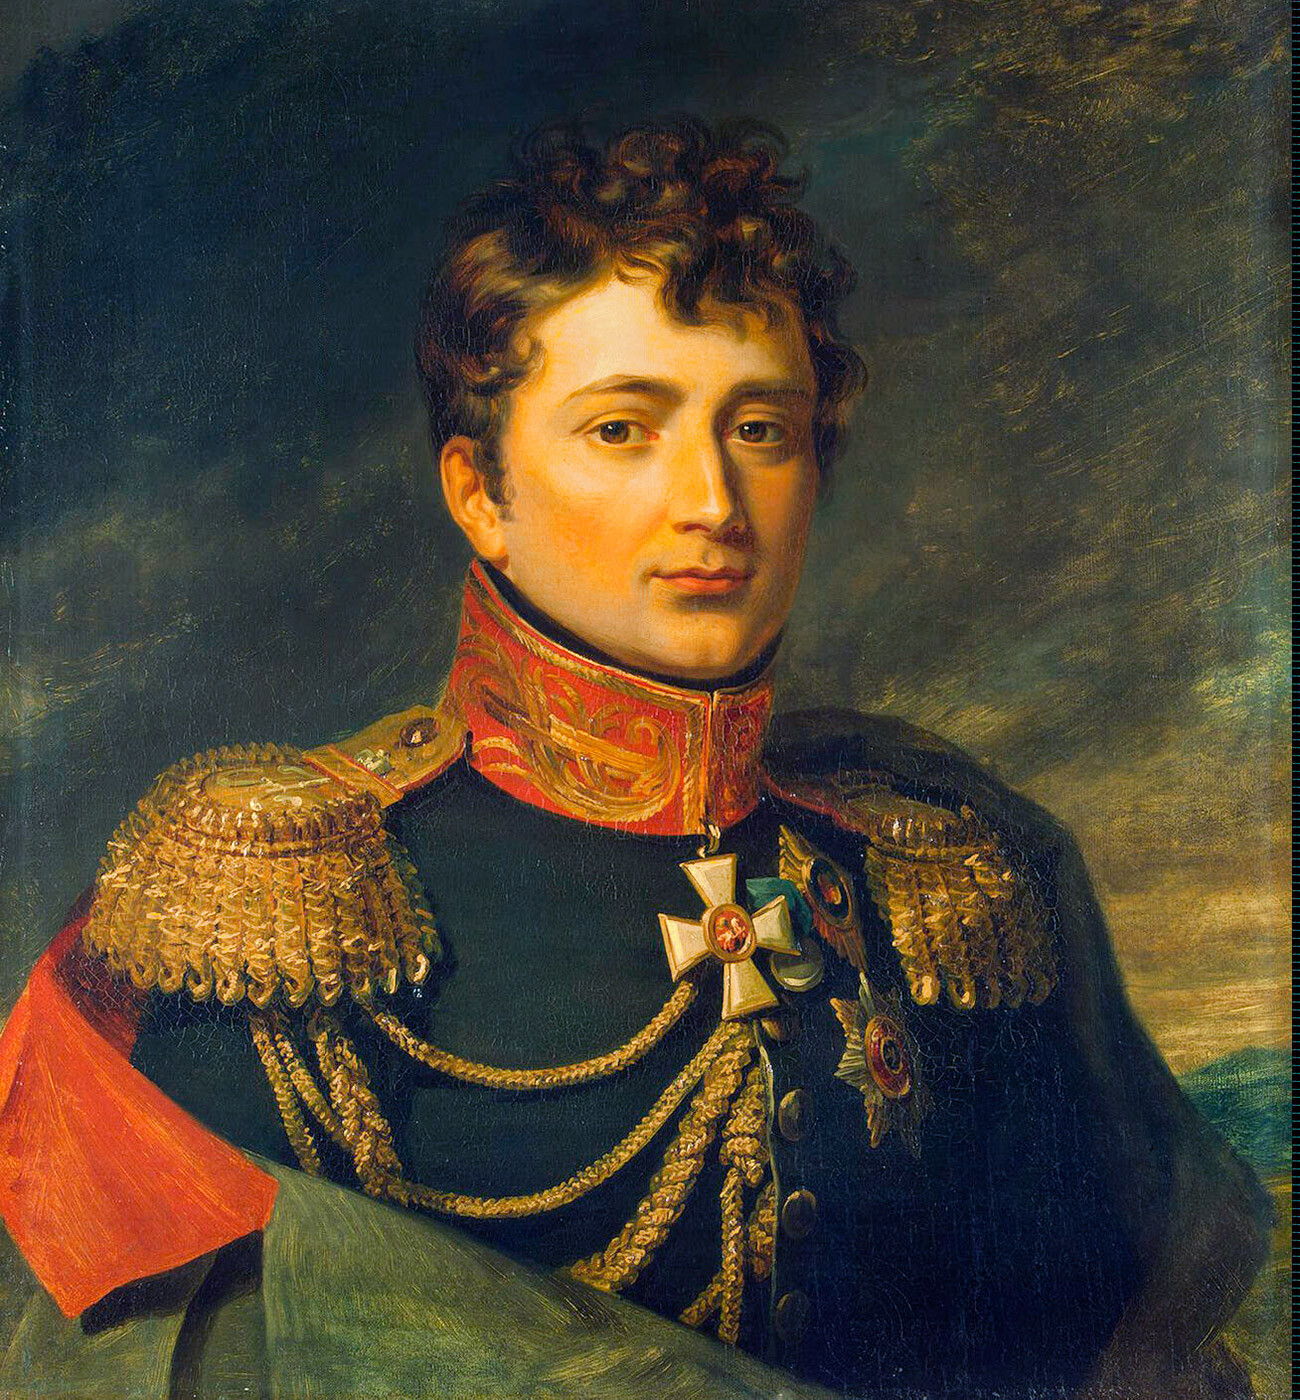 Guillaume-Emmanuel Guignard, comte de Saint-Priest